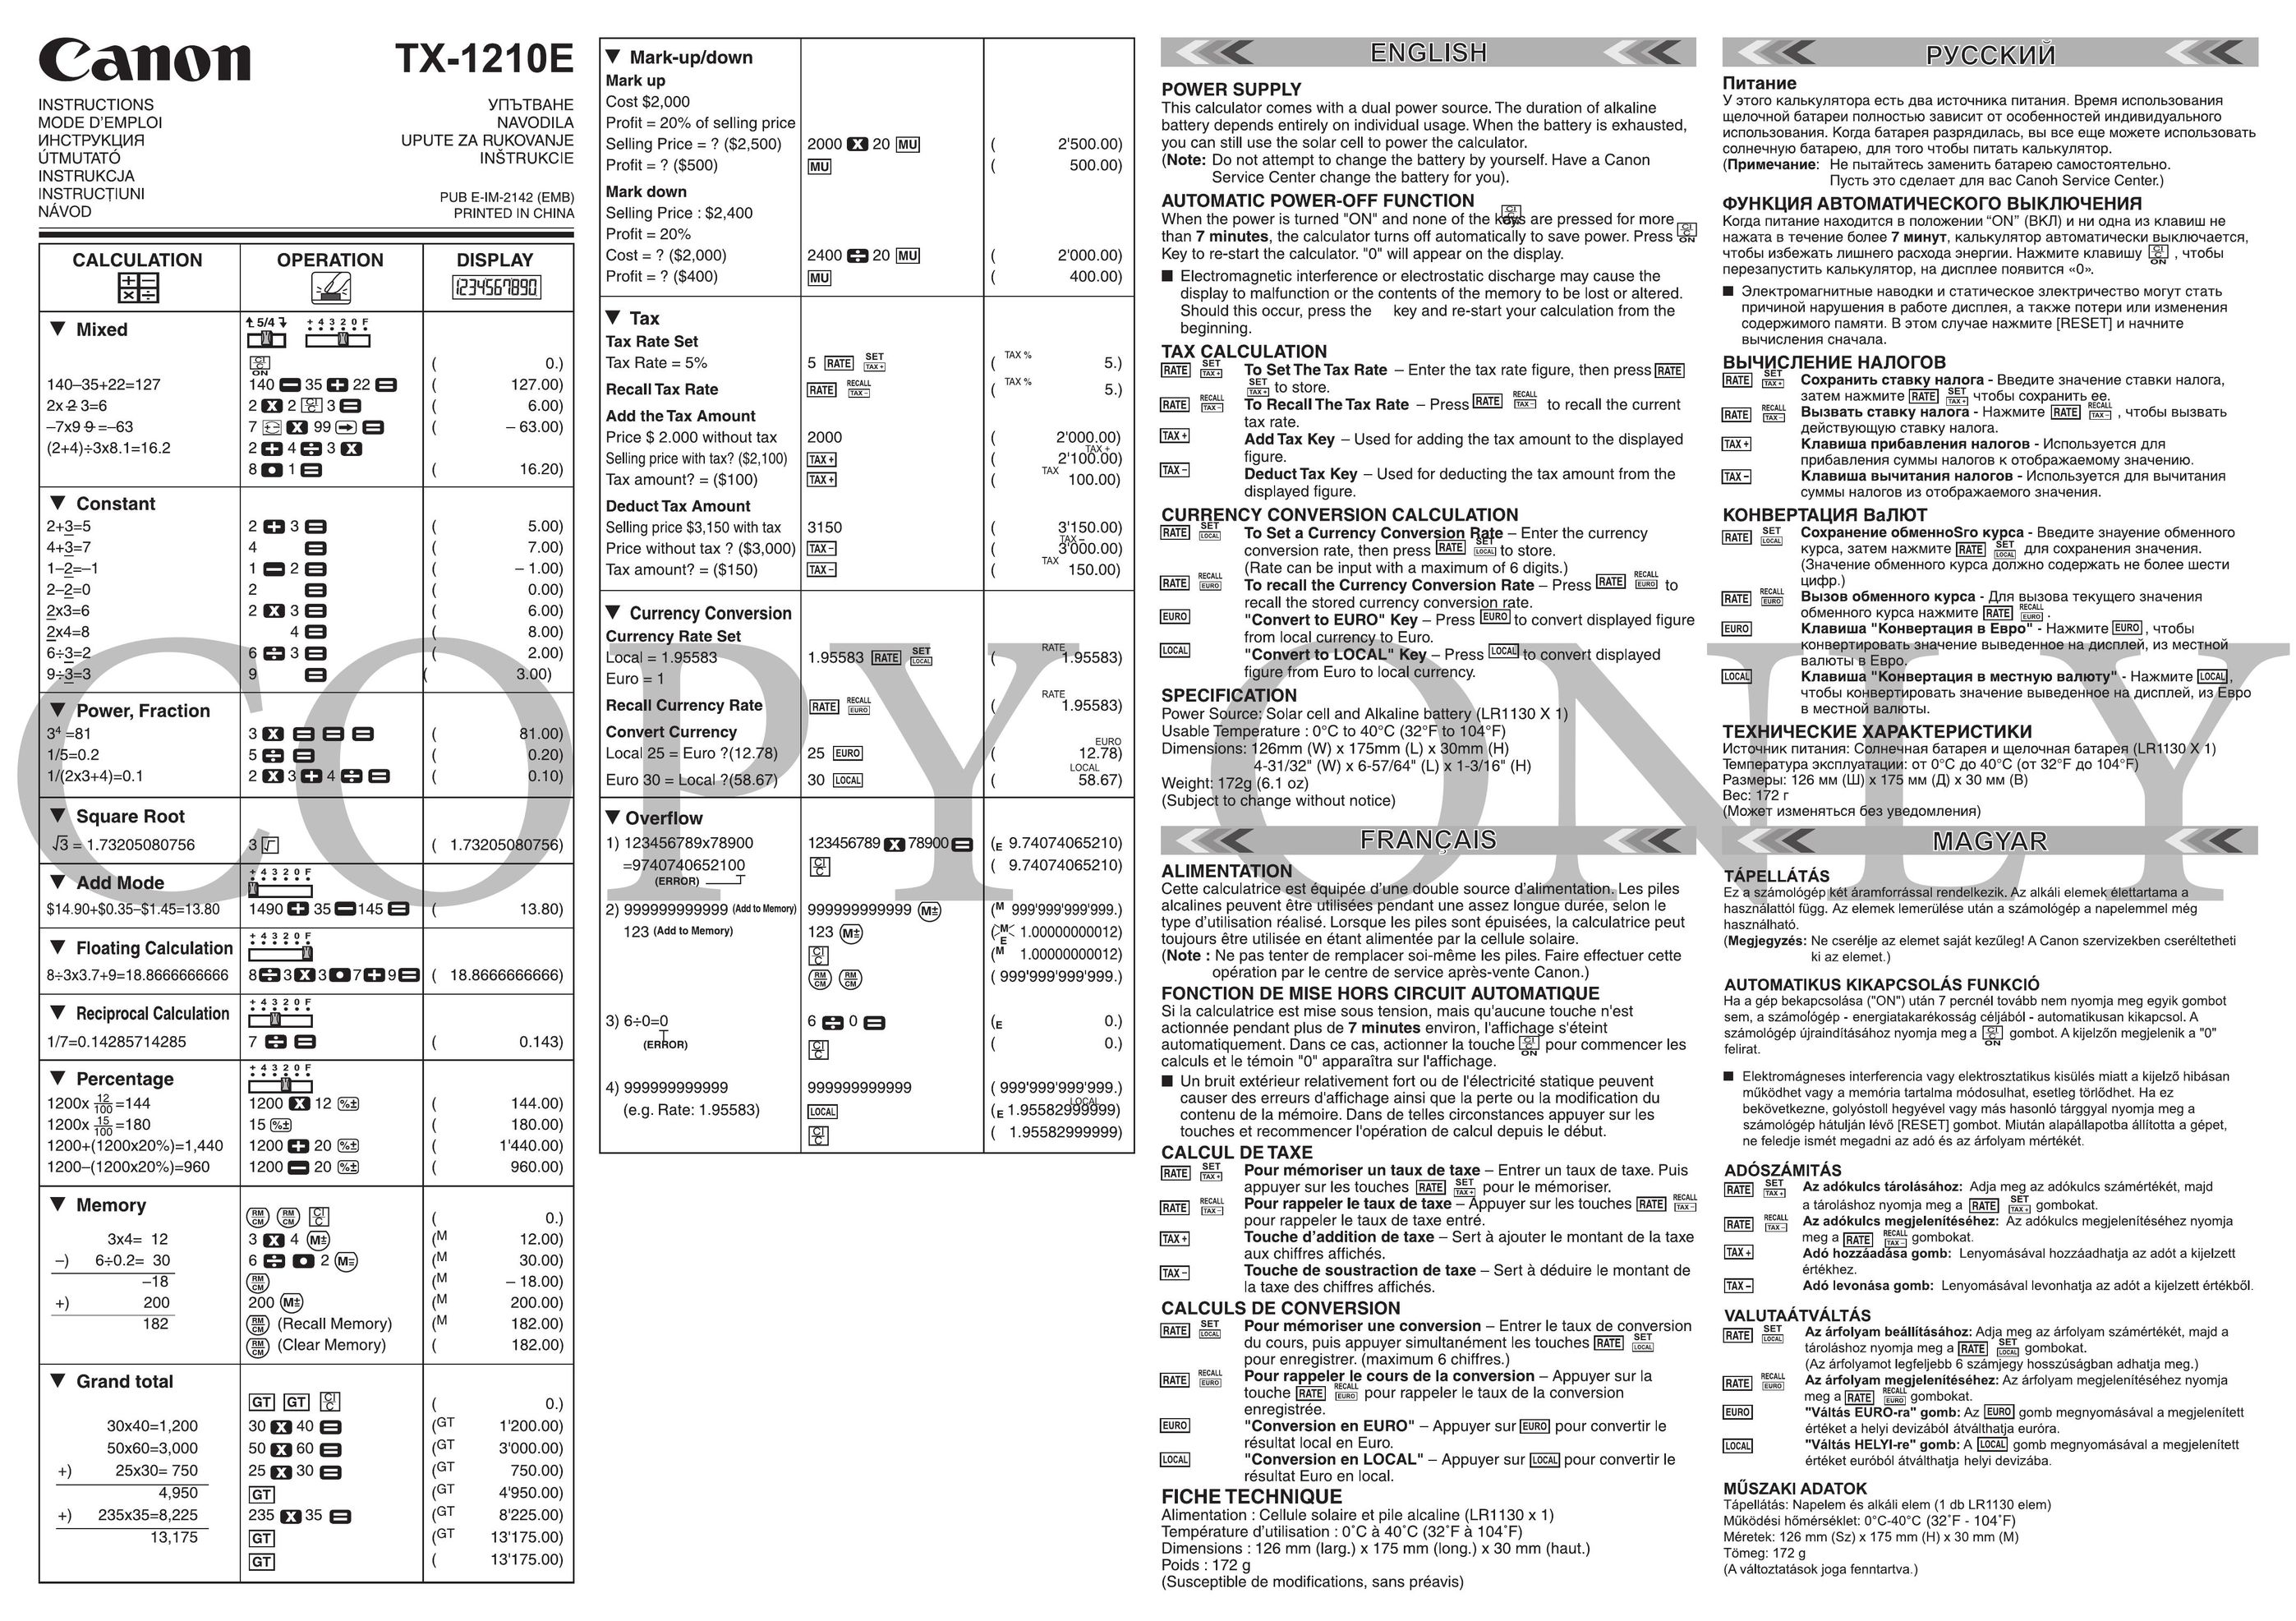 Canon TX-1210E Calculator User Manual